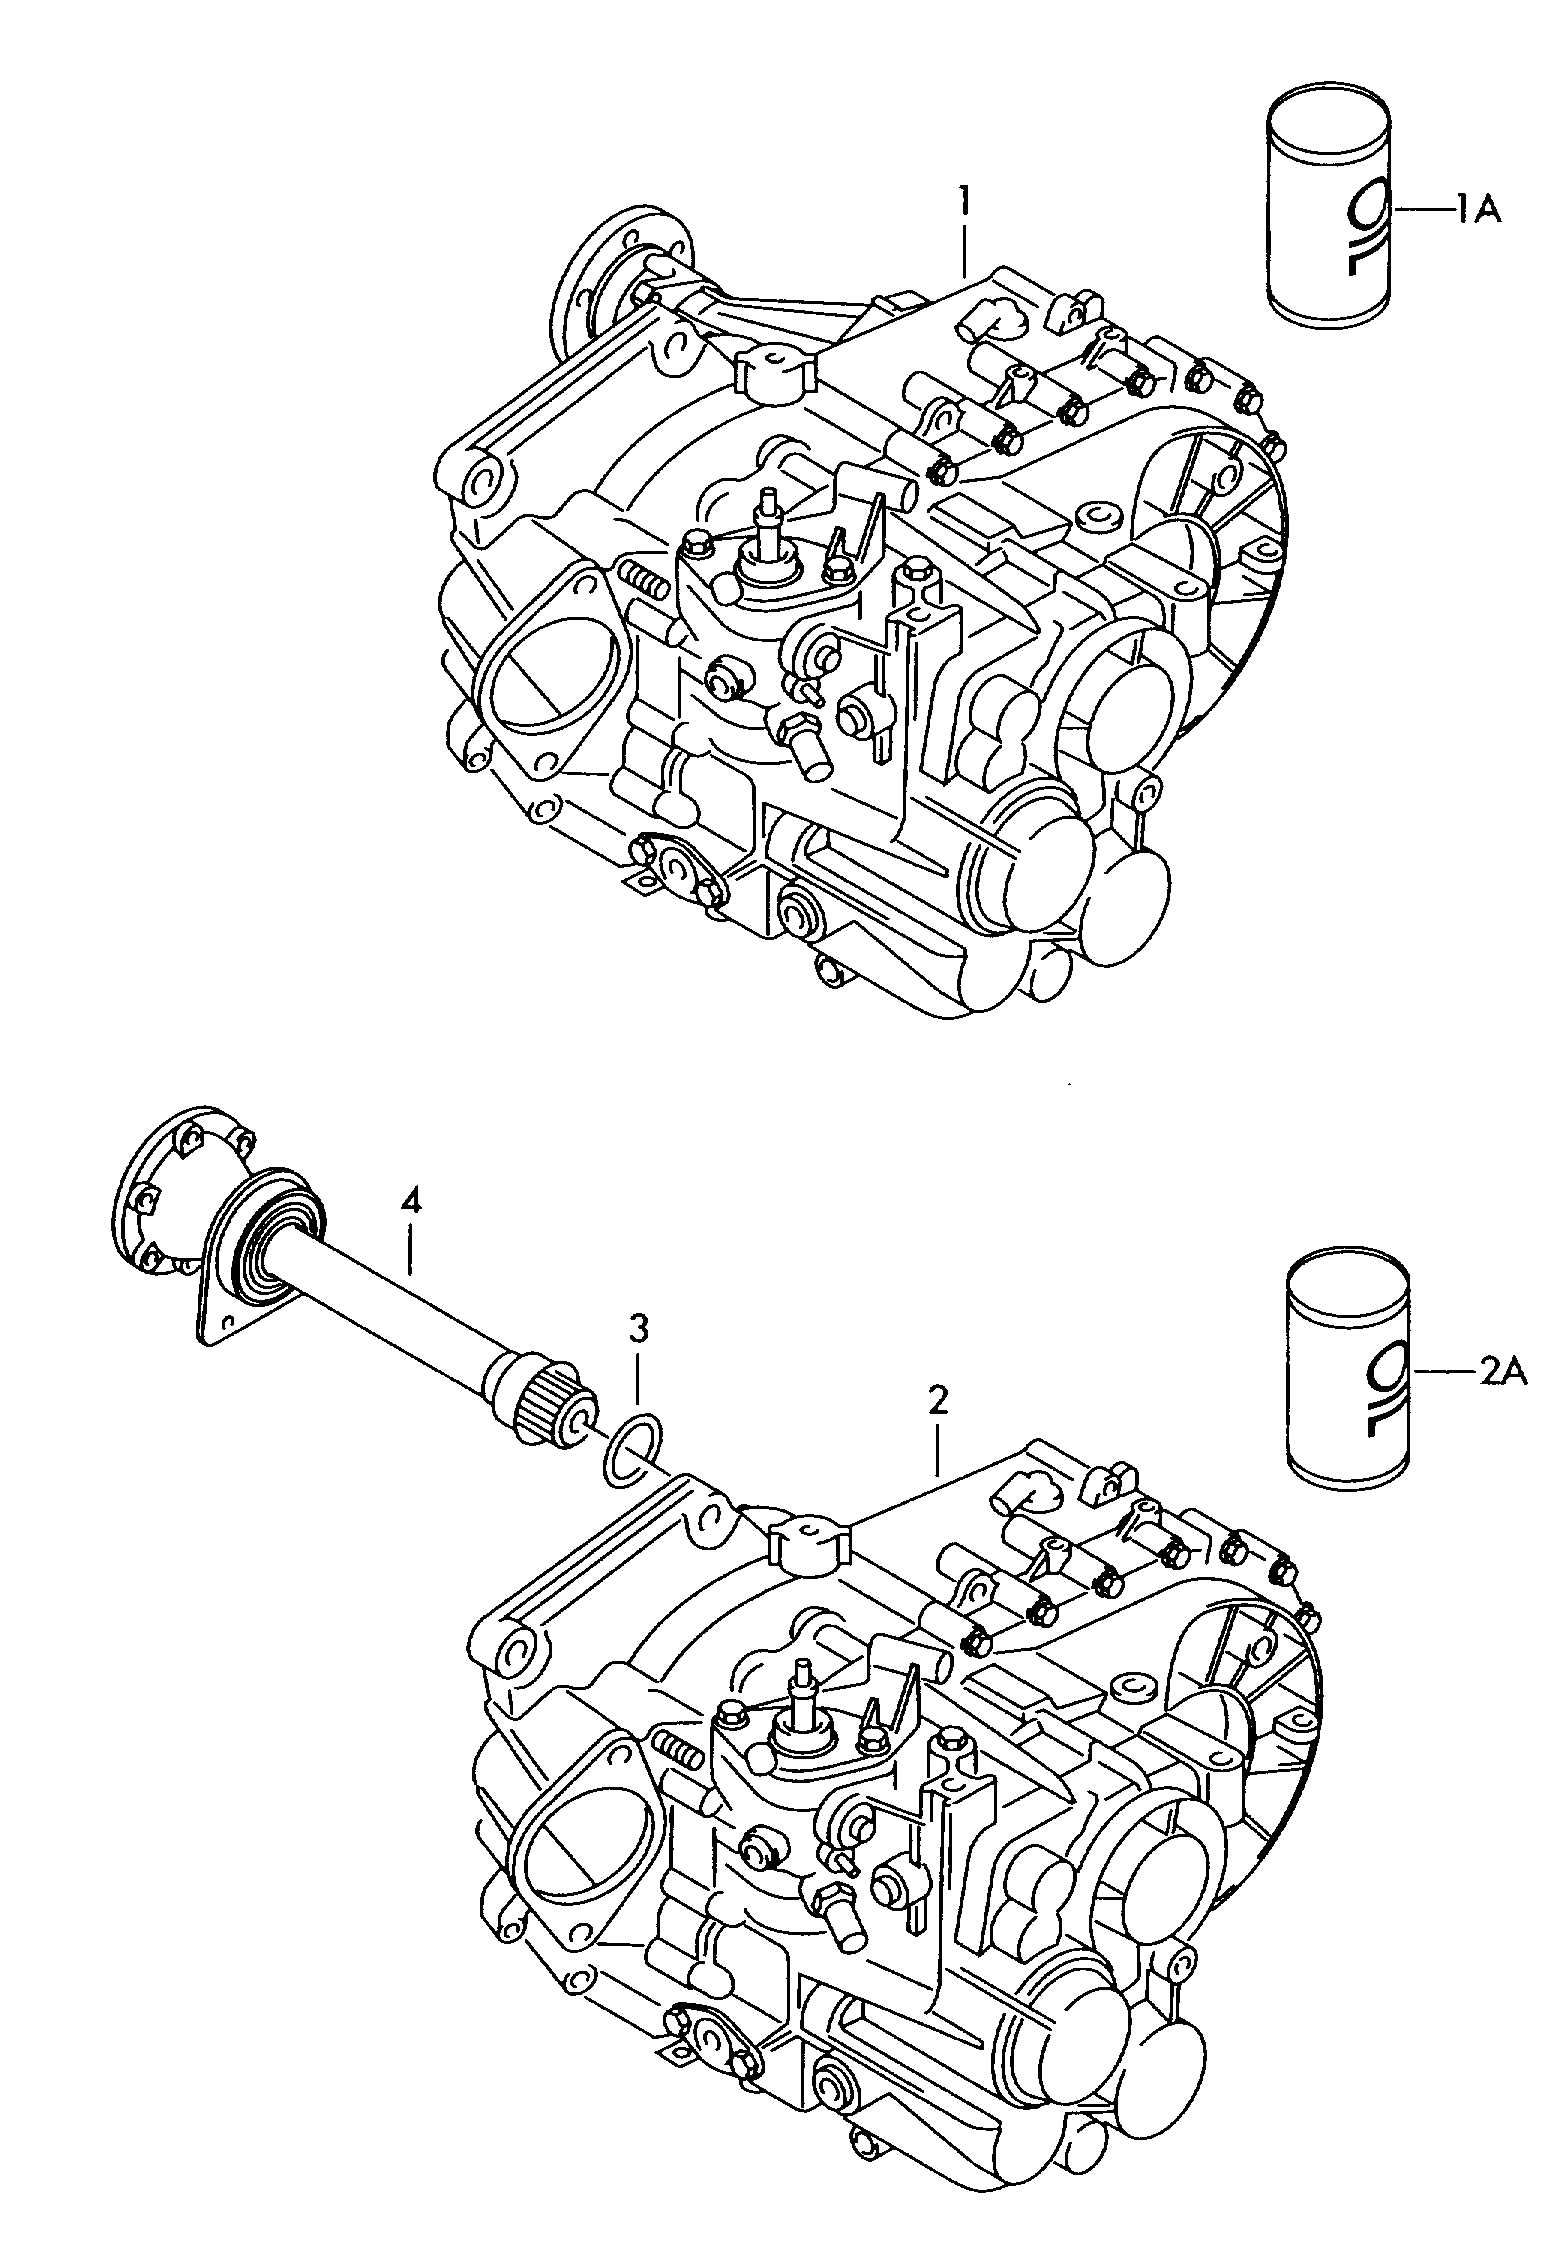 6-speed manual transmission إلى عن على Volkswagen Sharan Sharan (2001 - 2002)